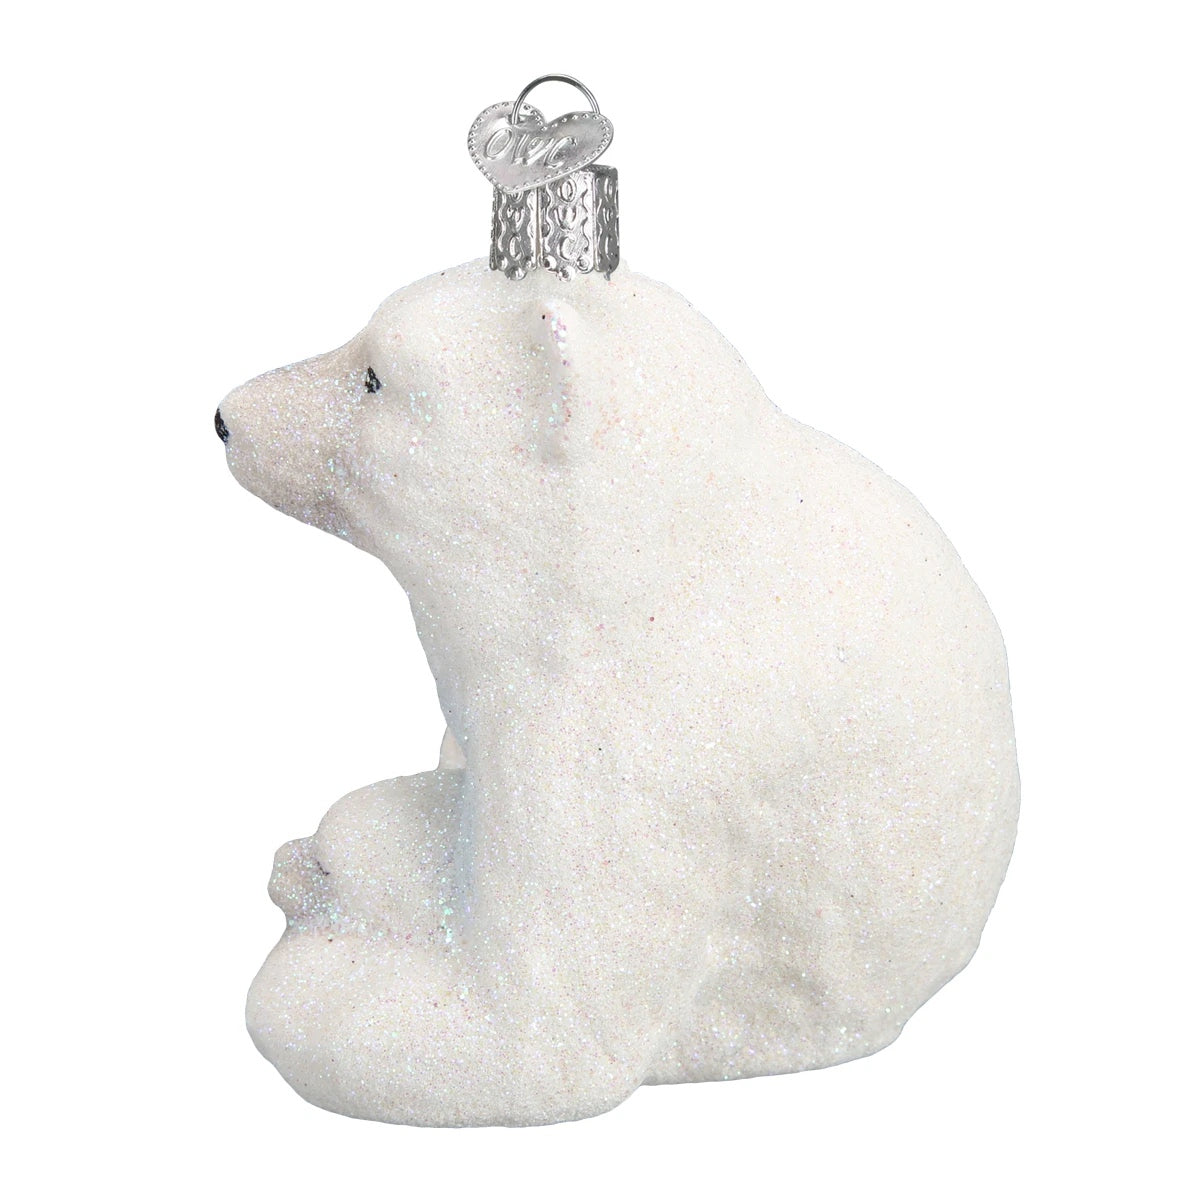 Old World Christmas Polar Bear With Cub Ornament    